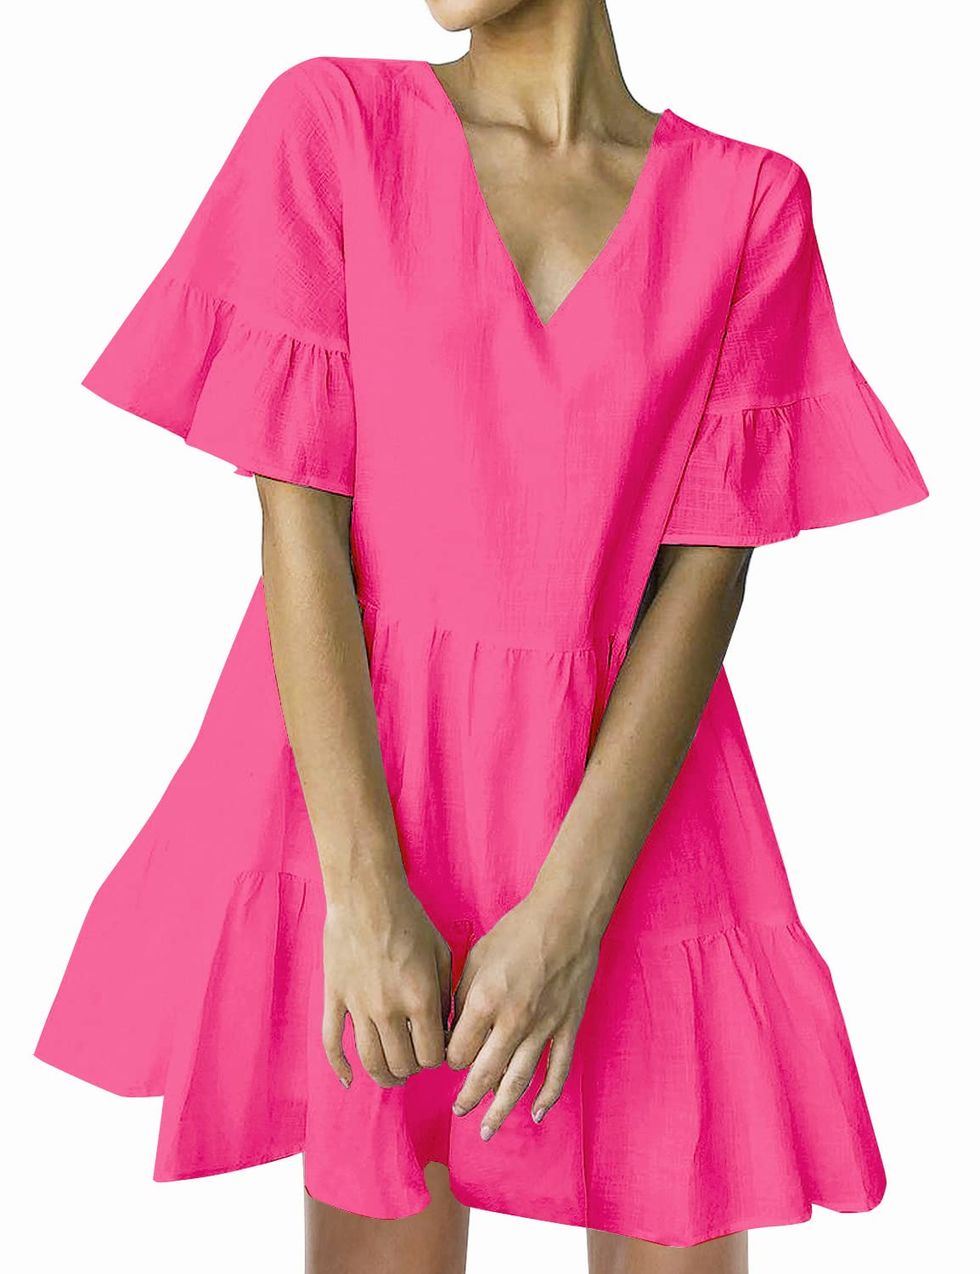 Hot Pink Tunic Dress